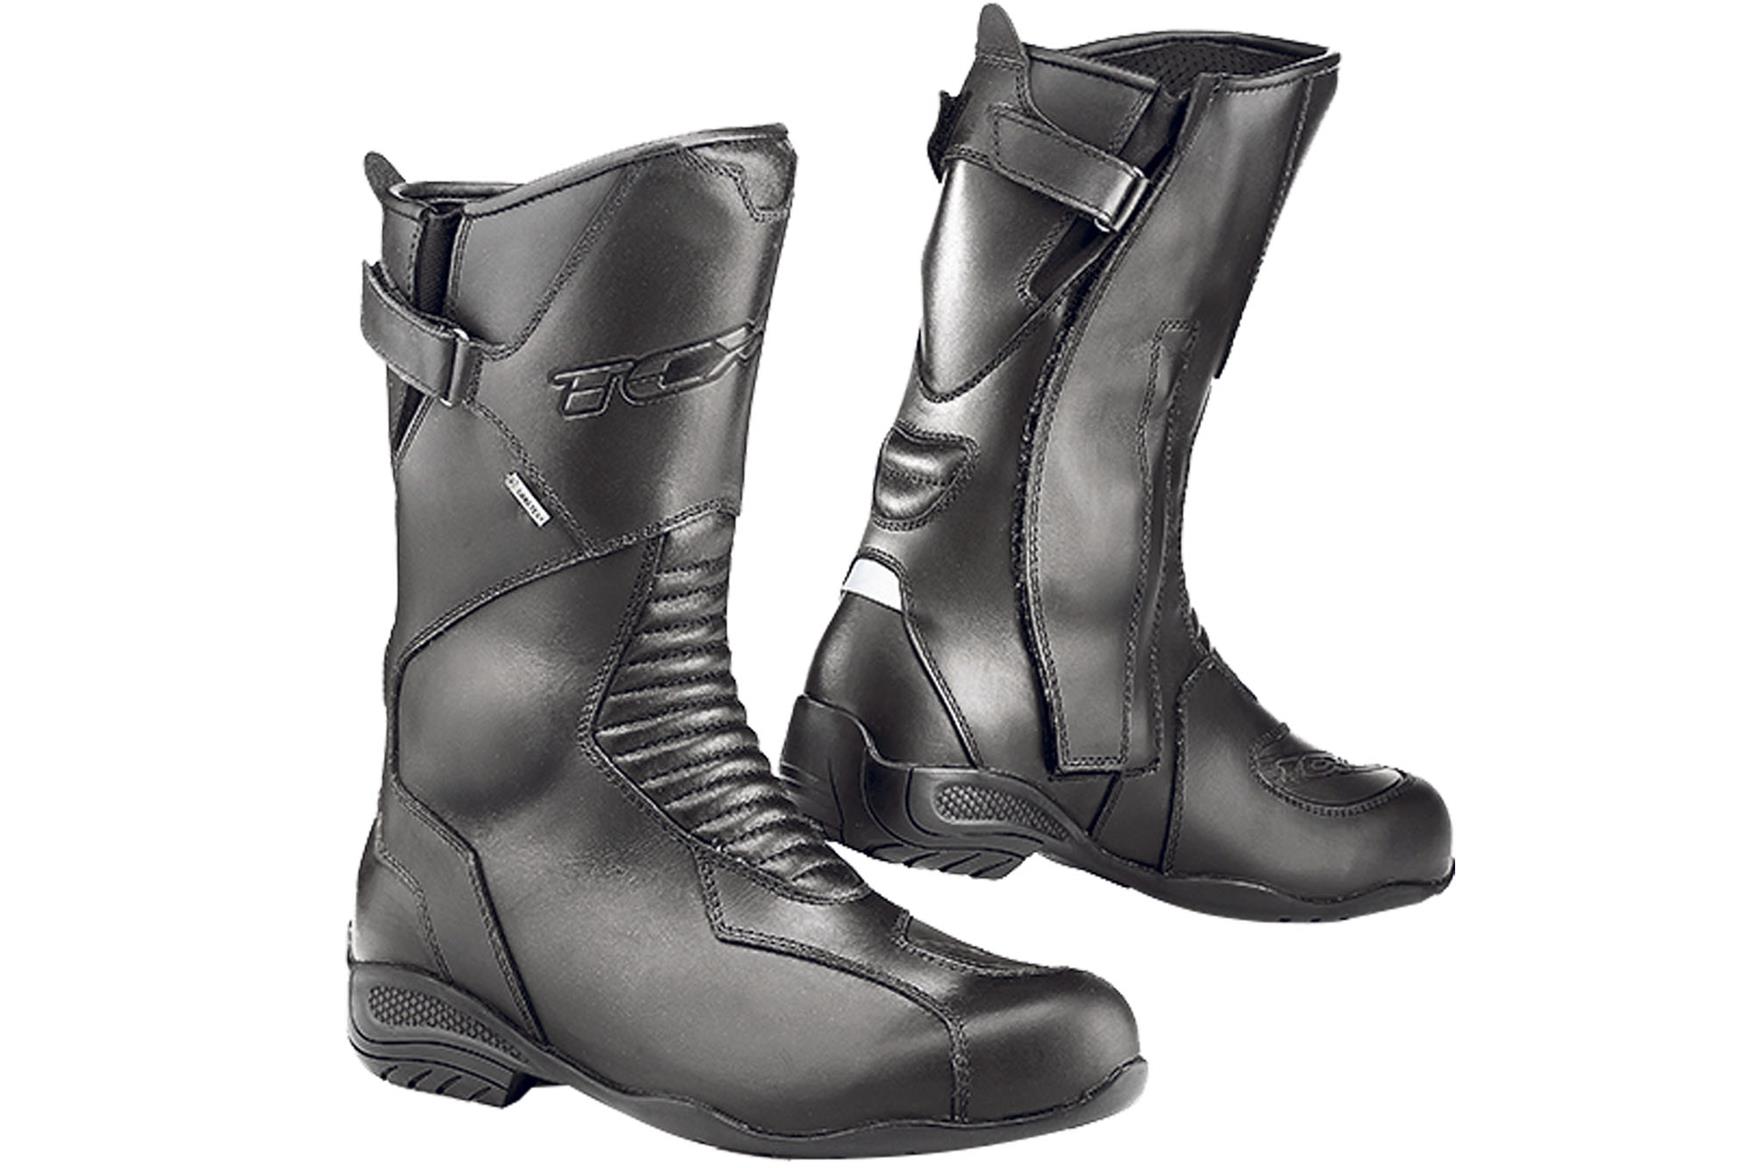 New gear: TCX Lady Bluma GTX boots